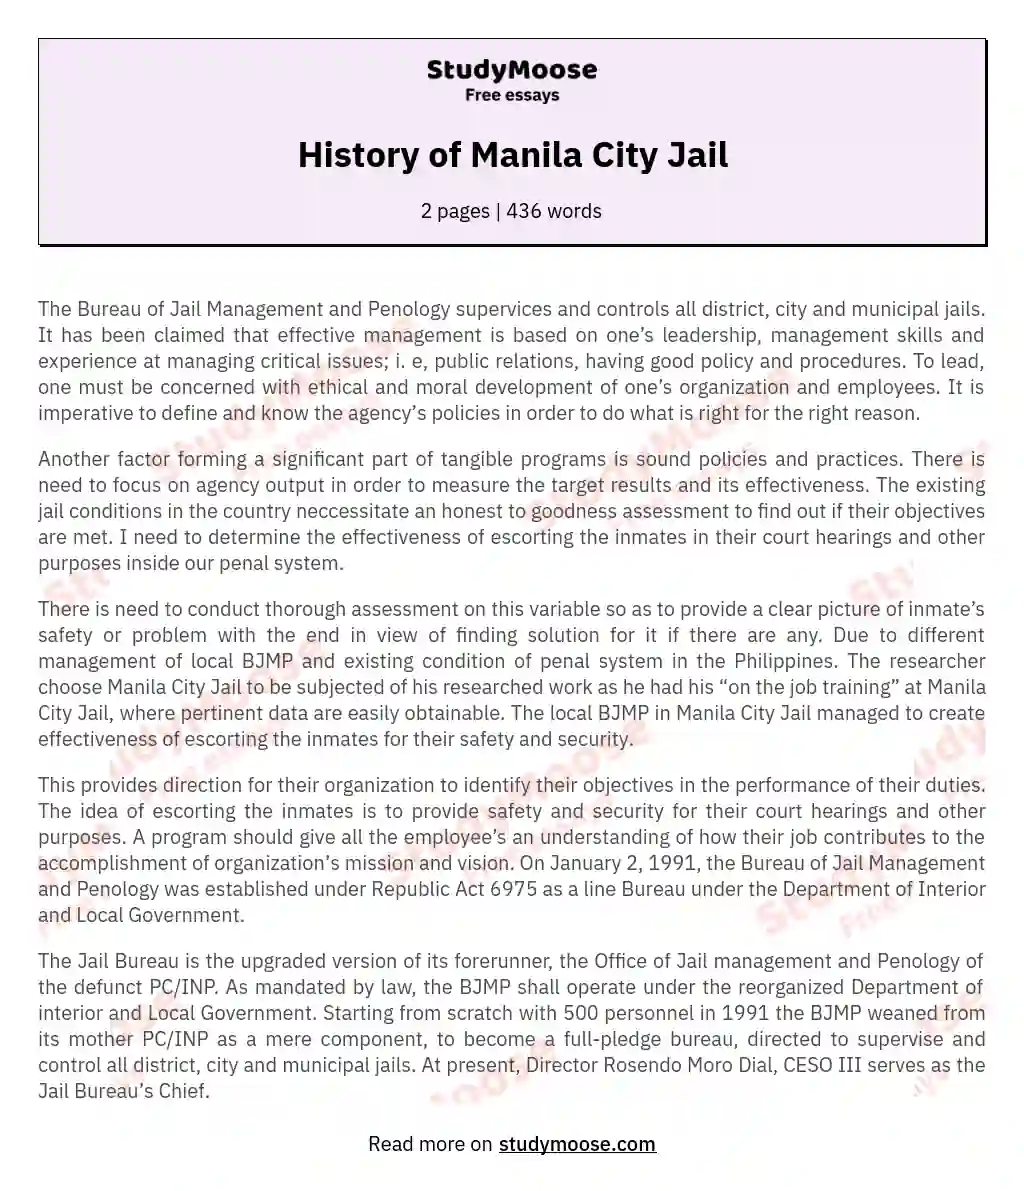 History of Manila City Jail essay